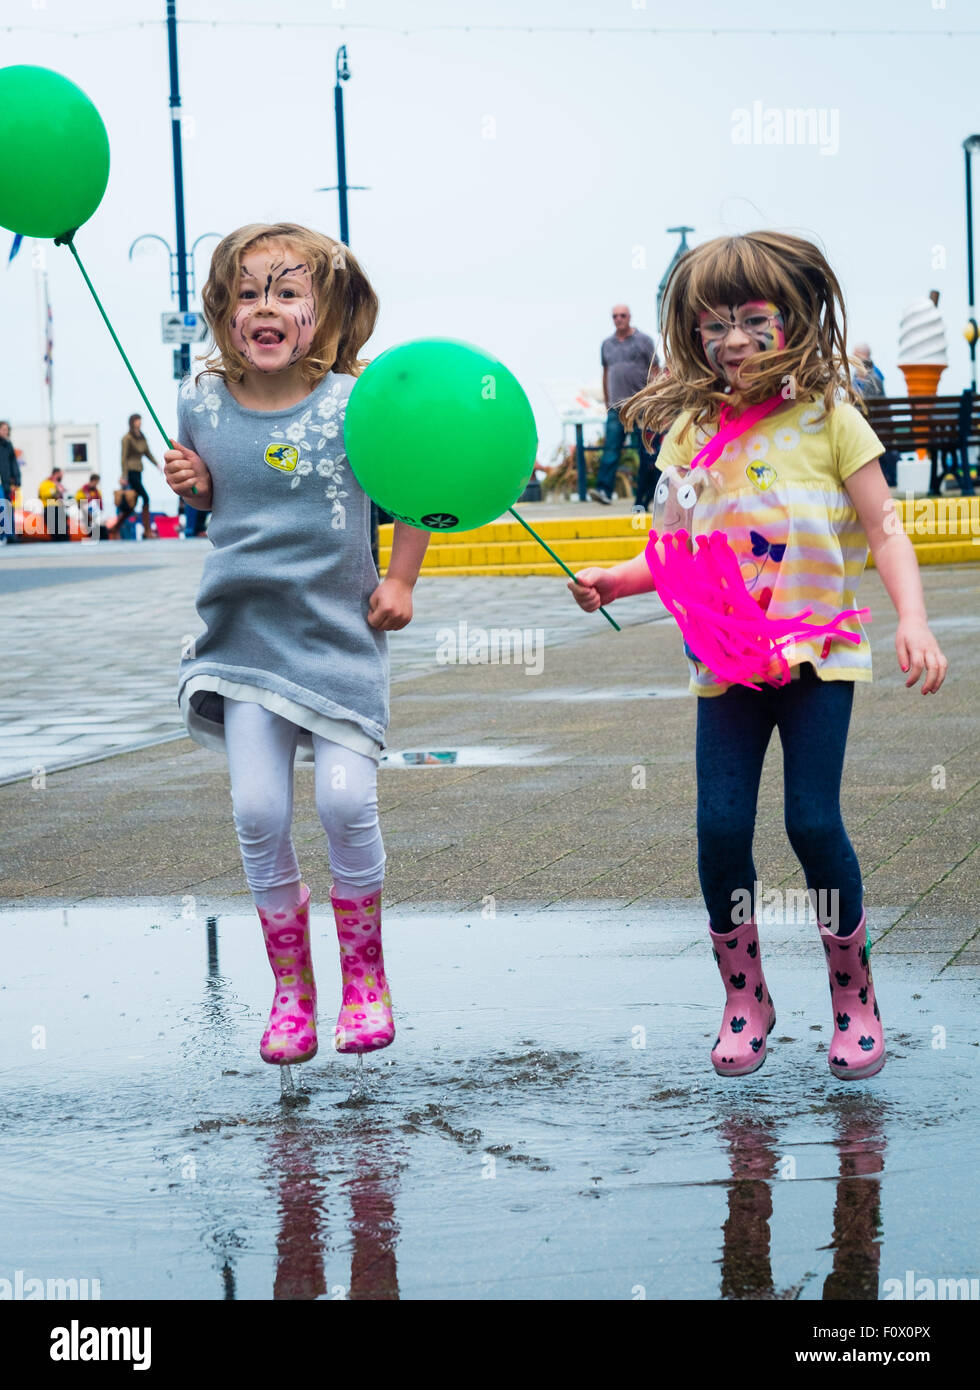 Aberystwyth, Wales, UK. 22. August 2015. Zwei junge Mädchen viel Spaß beim plantschen in einer Pfütze von Regenwasser auf einer nassen Nachmittag. Während ein Großteil der Südosten von Großbritannien in heißen trockenen Sonne mit dem Effekt "Spanisch Plume" sonnt, ist im Westen viel schlechter Wetter erleben. Eine Kaltfront aus dem Norden bringt schwere Regen und bewölktem Himmel in Aberystwyth am Tag des jährlichen "Meer zum Ufer Food Festival" statt auf das Resort Promenade. Die Wahrscheinlichkeit ist für die ungeklärten Bedingungen herrschen für viel der nächsten Woche zu Photo Credit: Keith Morris/Alamy Live News Stockfoto